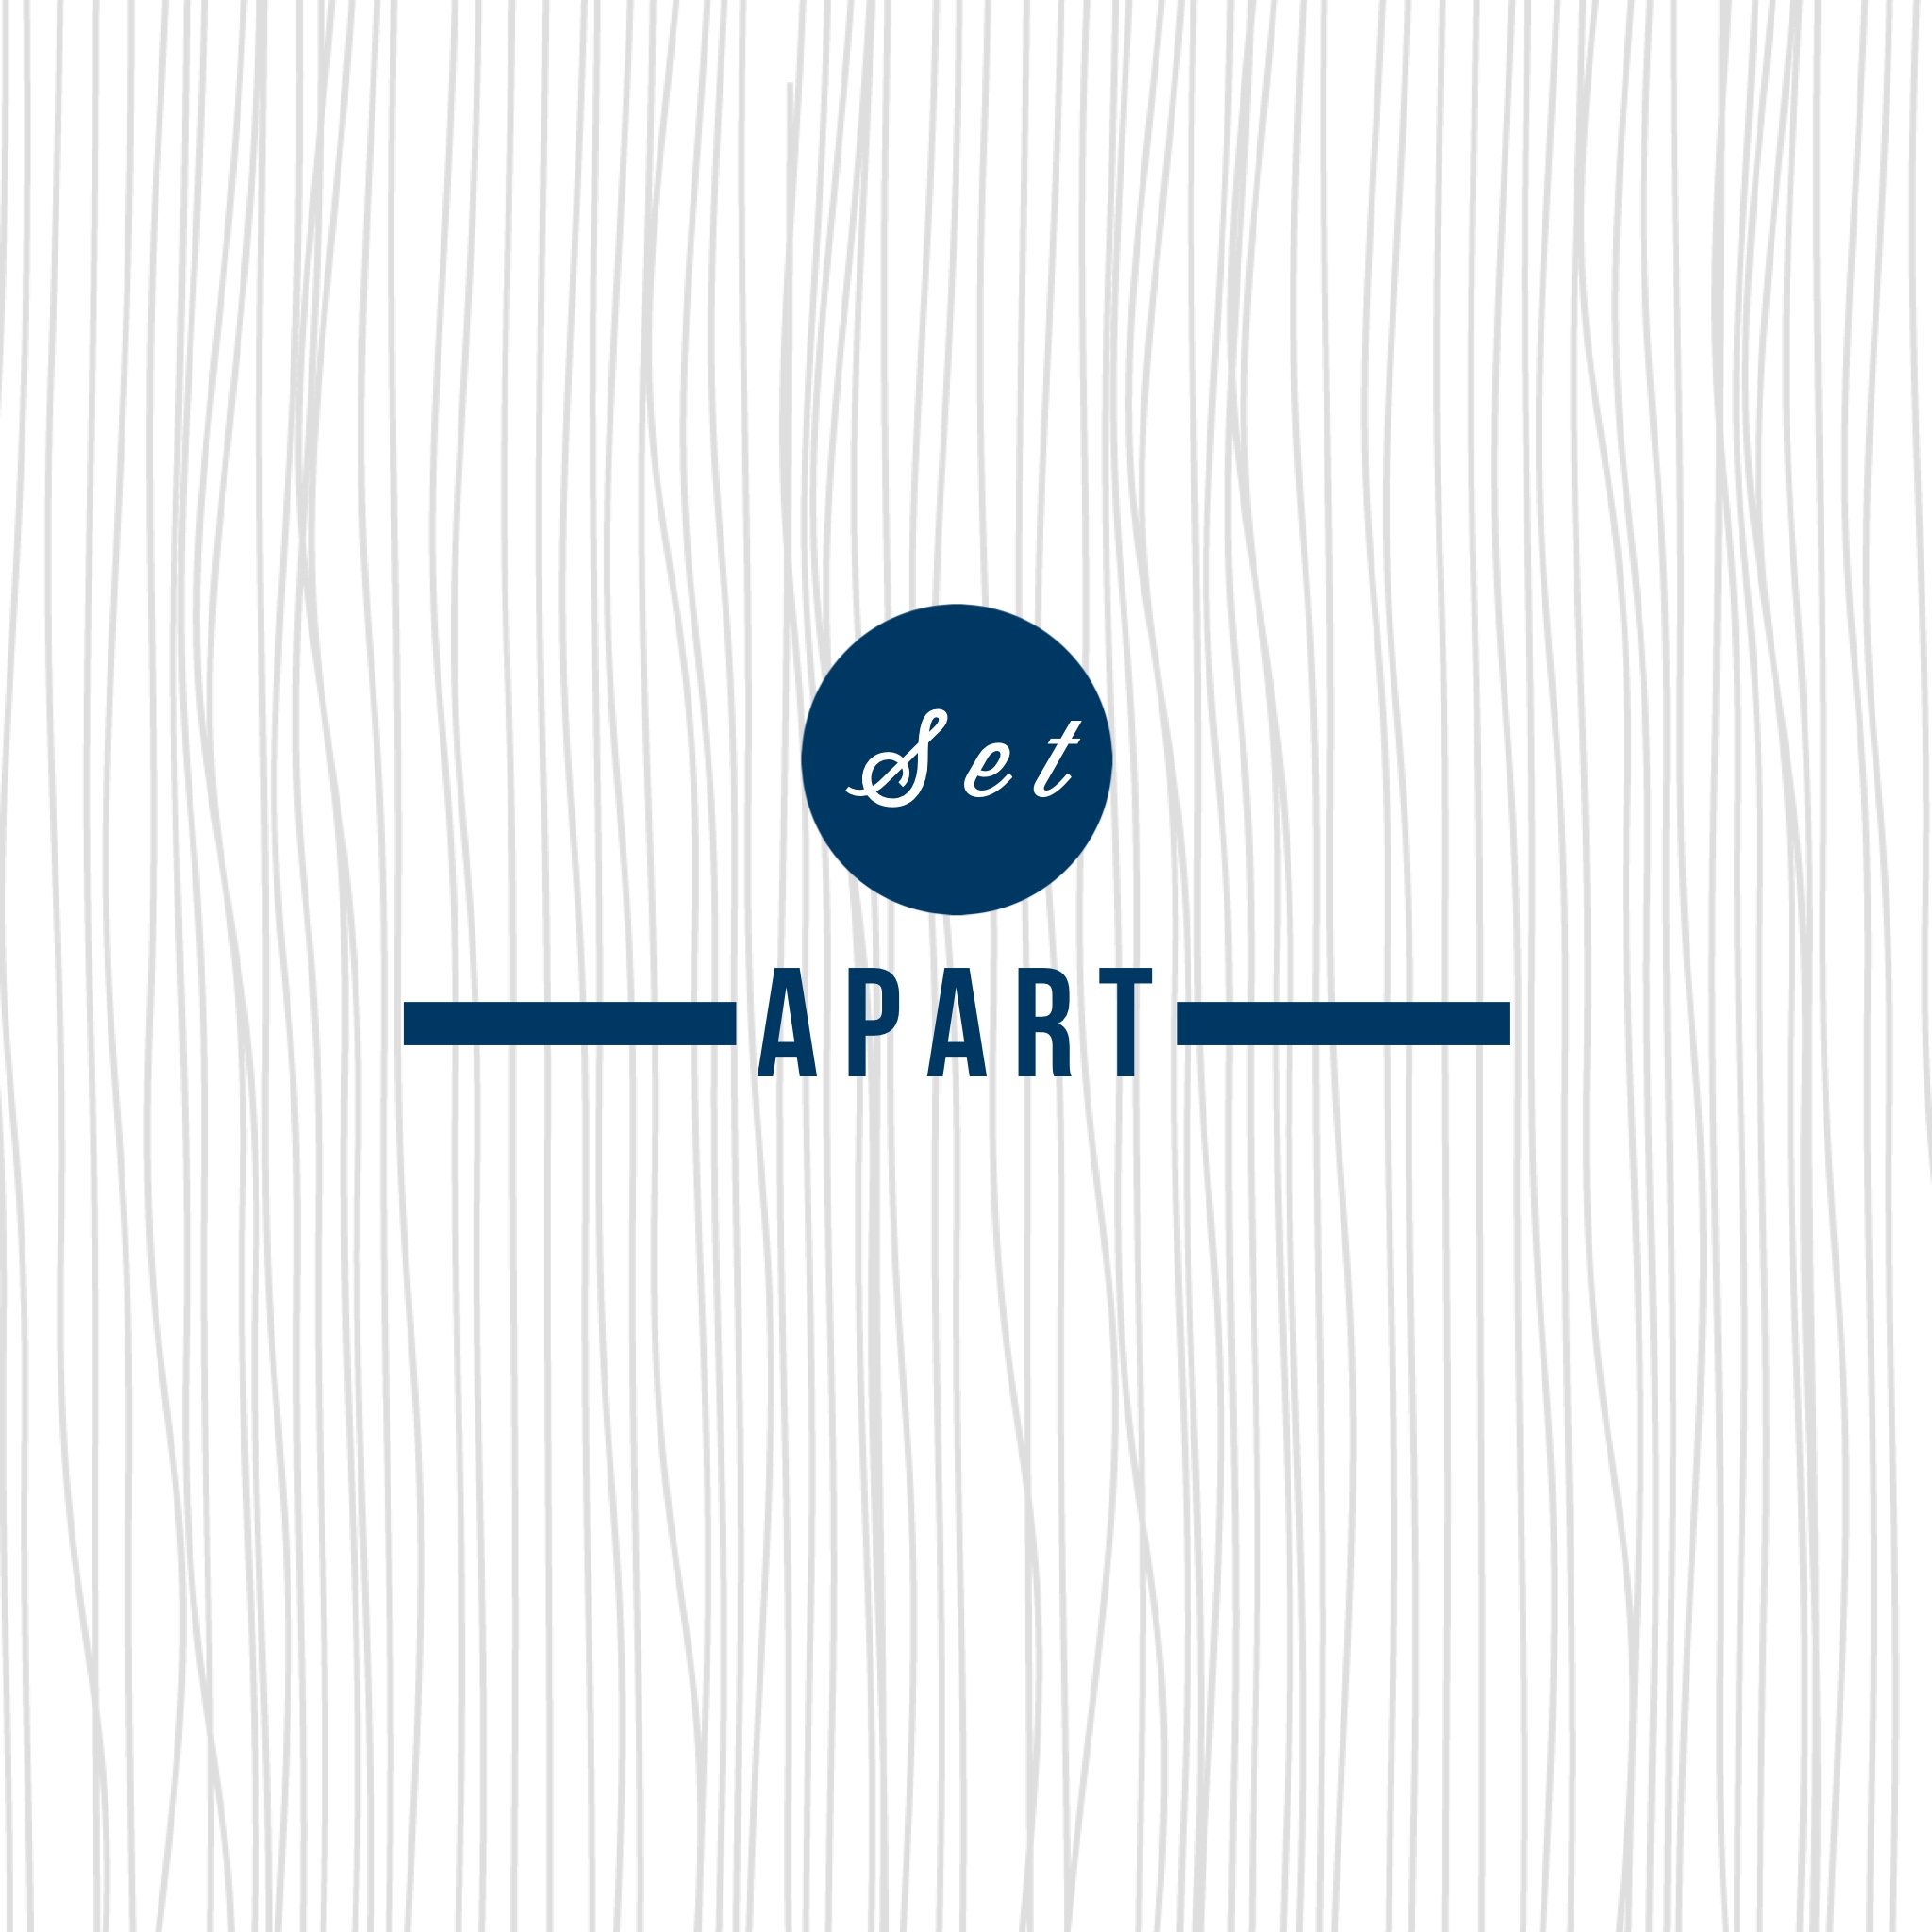 Set Apart - Part 2 (9.13.15)